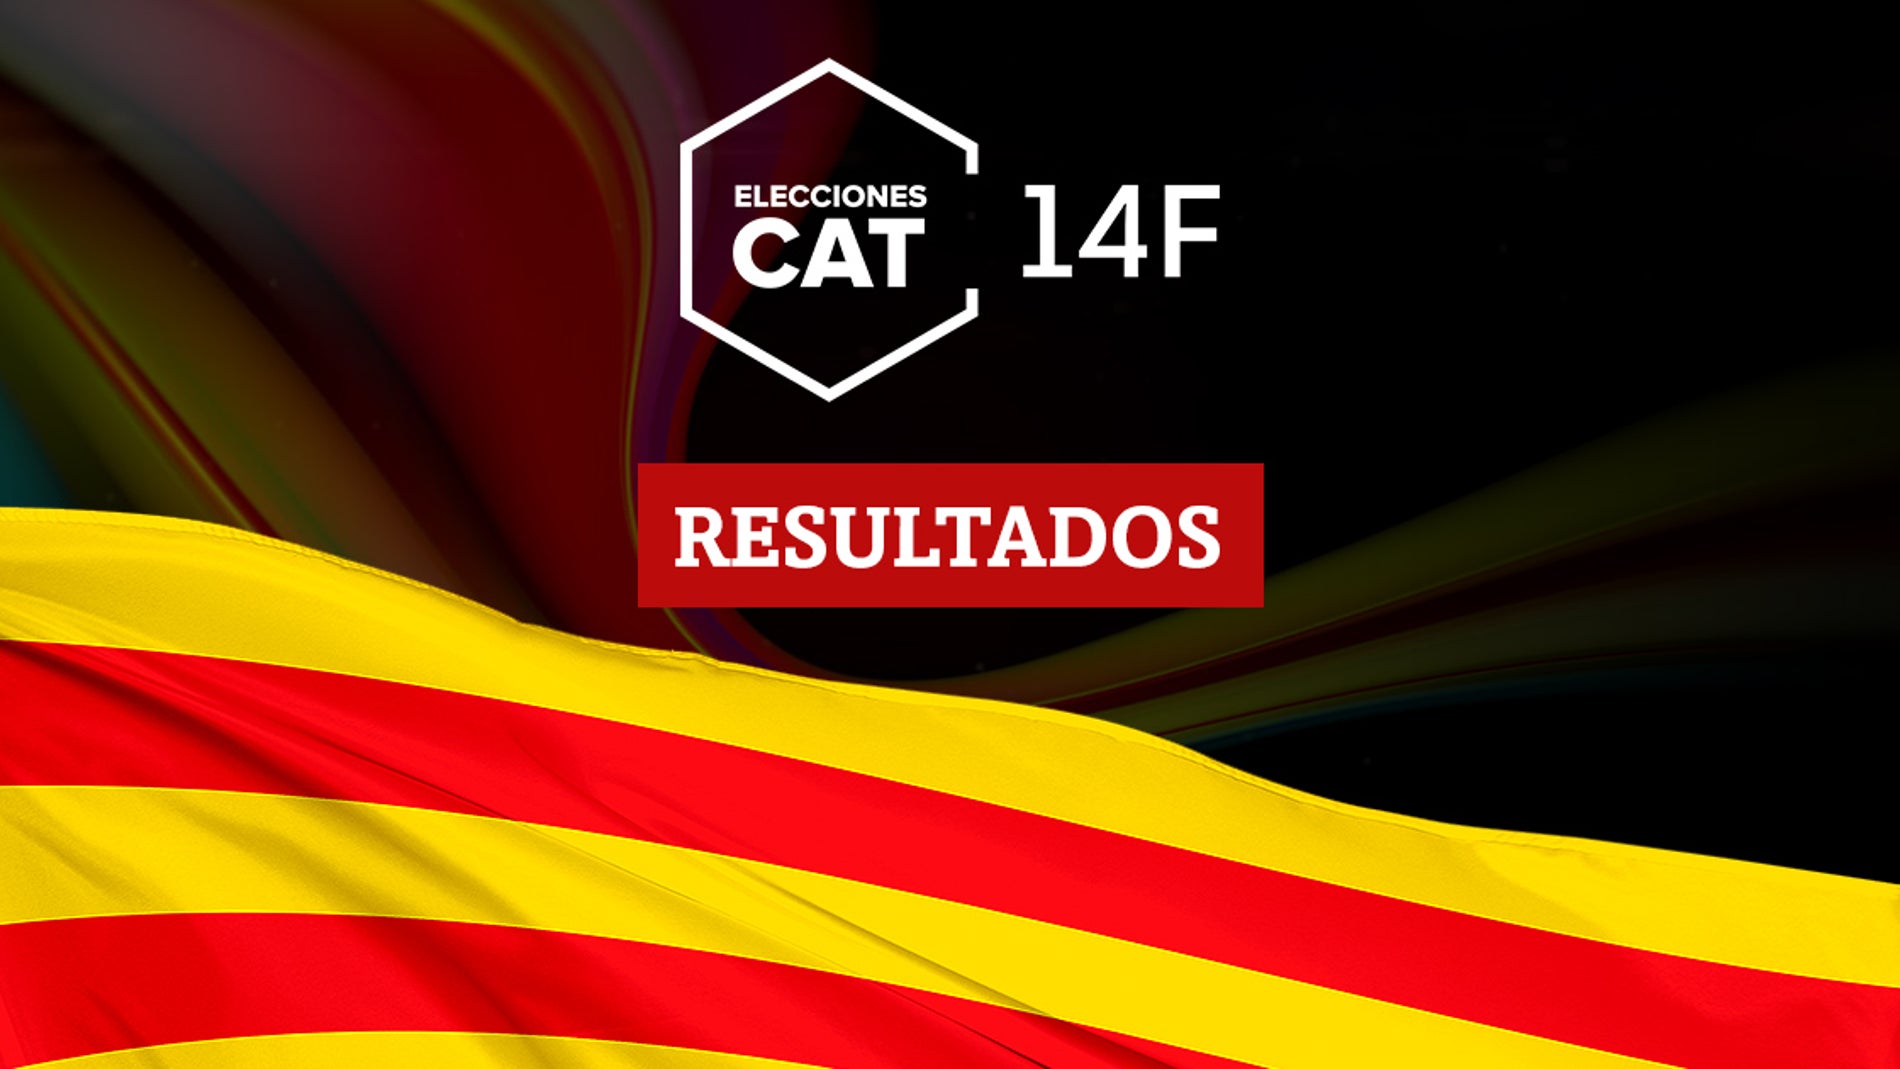 Resultados en Sant Climent Sescebes de las elecciones catalanas del 14F 2021